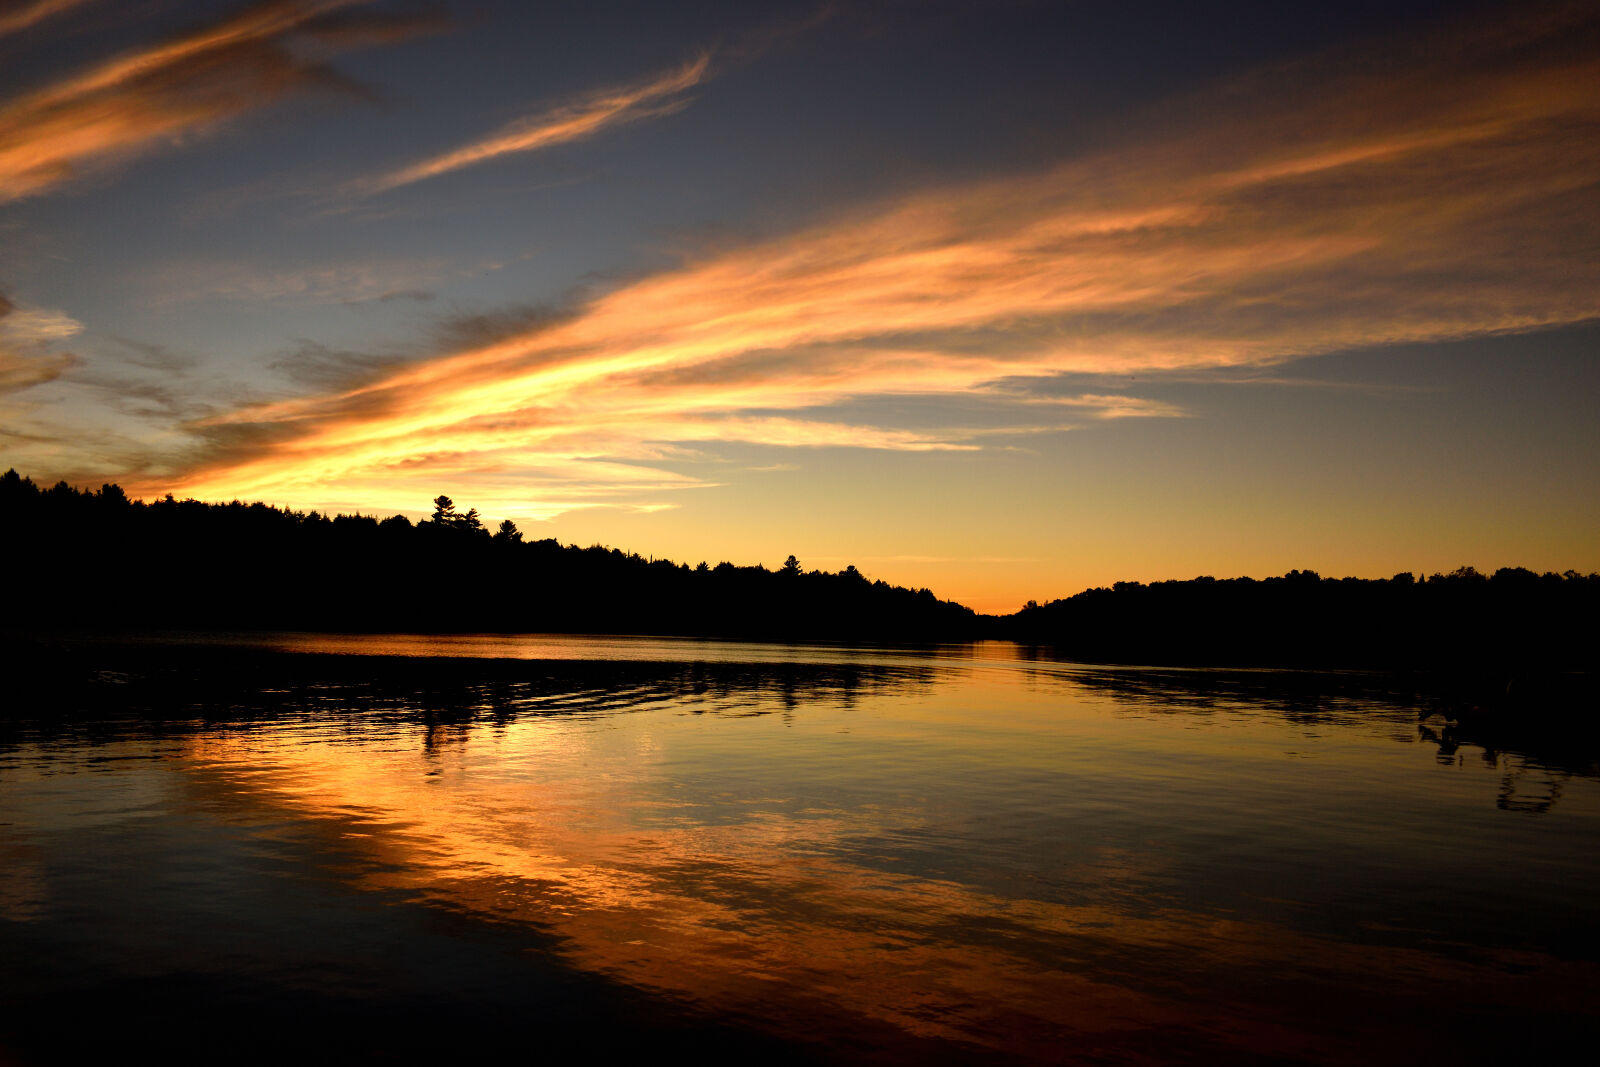 Nikon AF-P DX Nikkor 18-55mm F3.5-5.6G sample photo. Sunset ahmic lake ontario photography